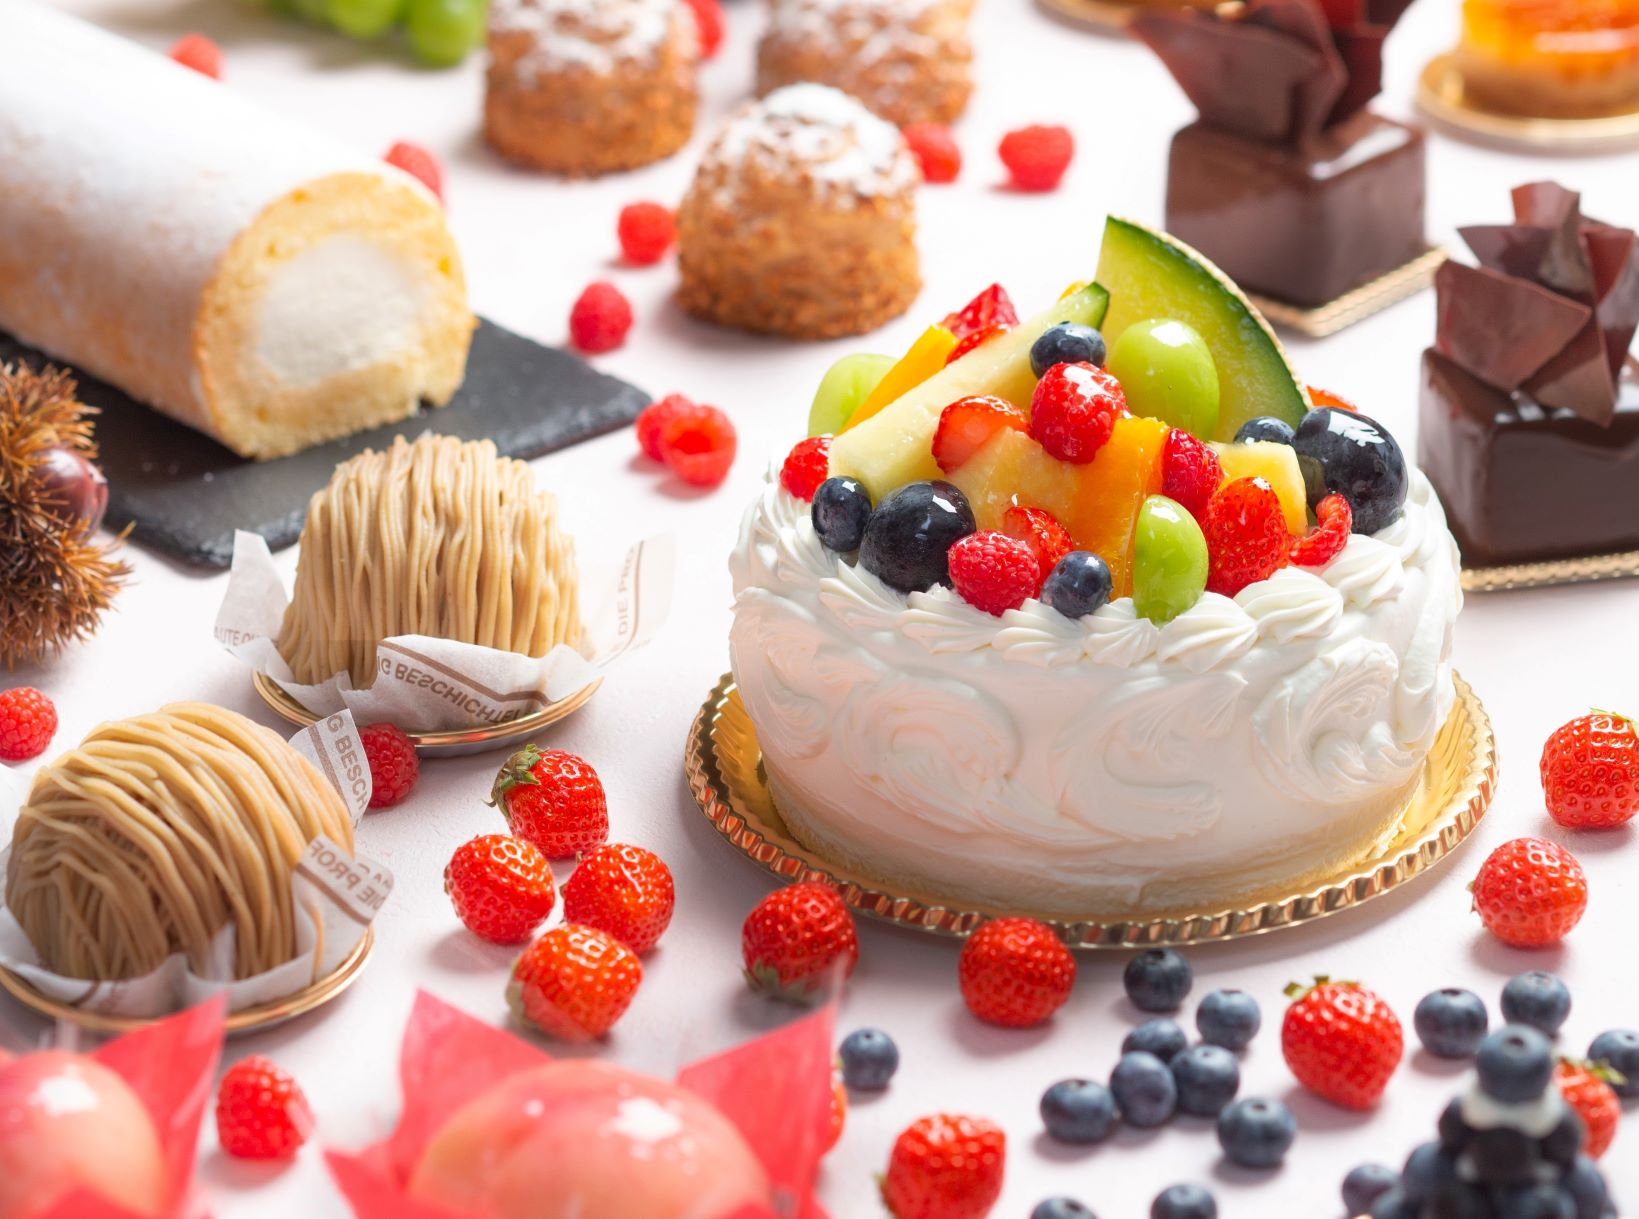 【川崎日航ホテル】ホテル1階に地元川崎、神奈川の素材を活かした生ケーキや焼き菓子が並ぶ「ペストリーショップ」を新規オープンのサブ画像1